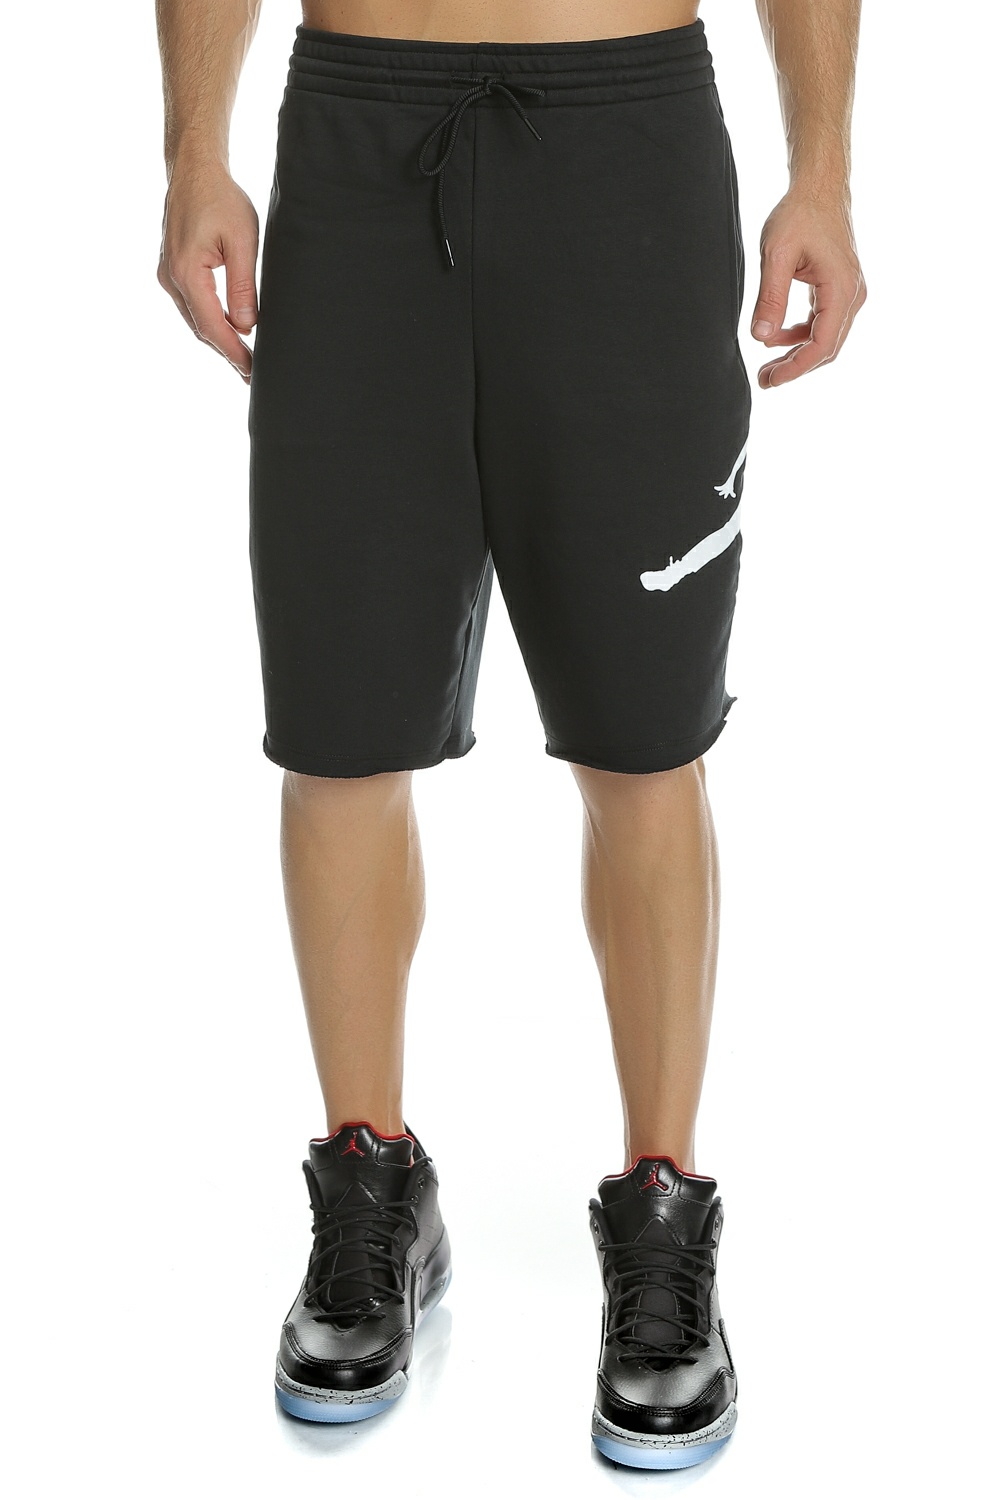 Ανδρικά/Ρούχα/Σορτς-Βερμούδες/Αθλητικά NIKE - Ανδρικό σορτς NIKE Jordan Sportswear Jumpman μαύρο